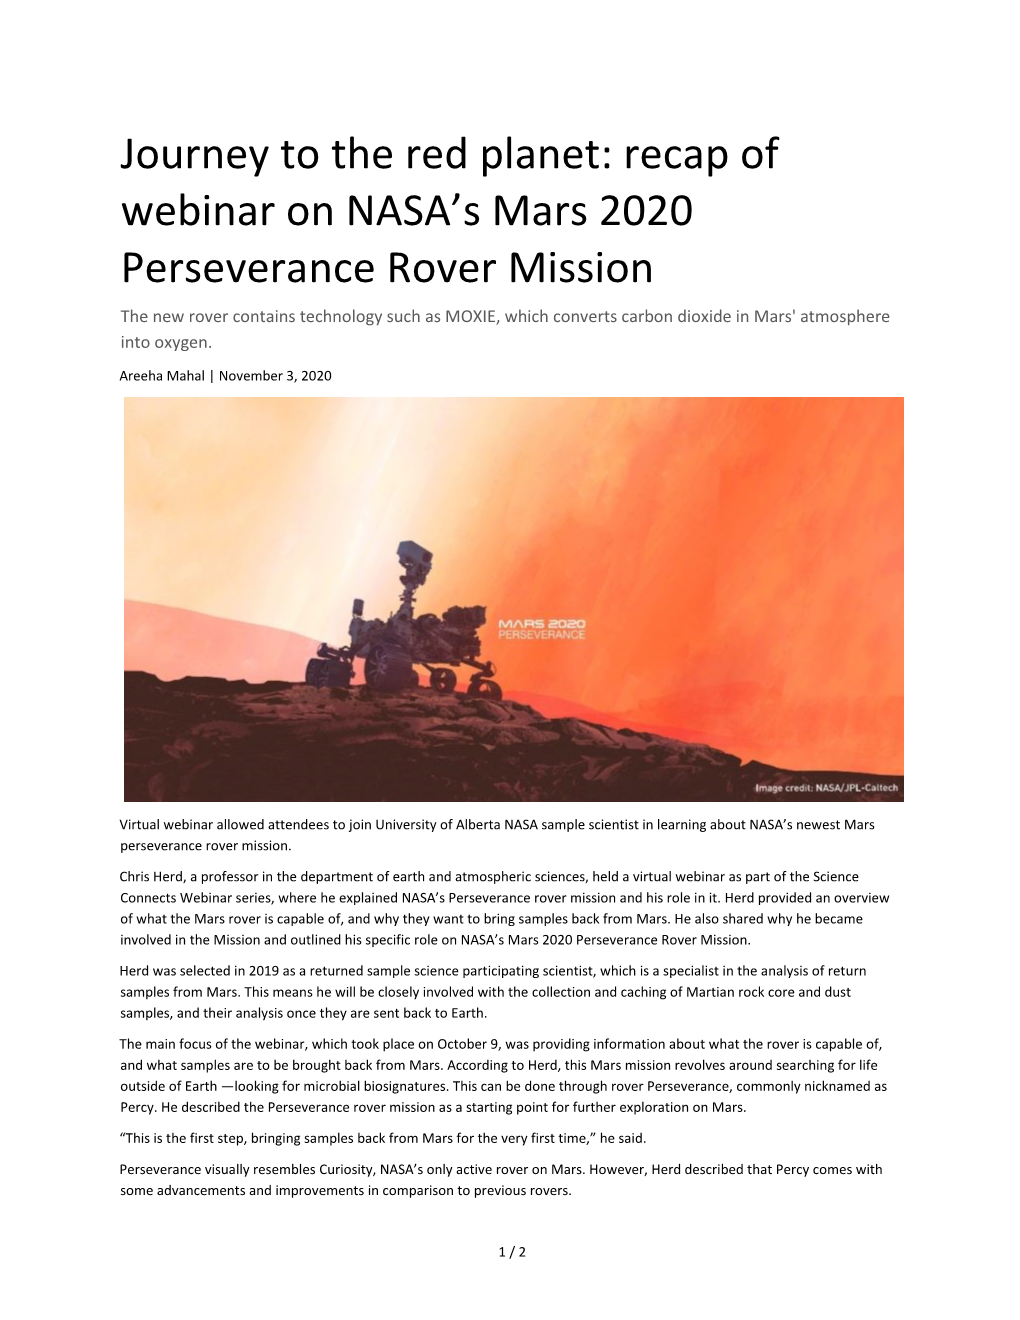 Recap of Webinar on NASA's Mars 2020